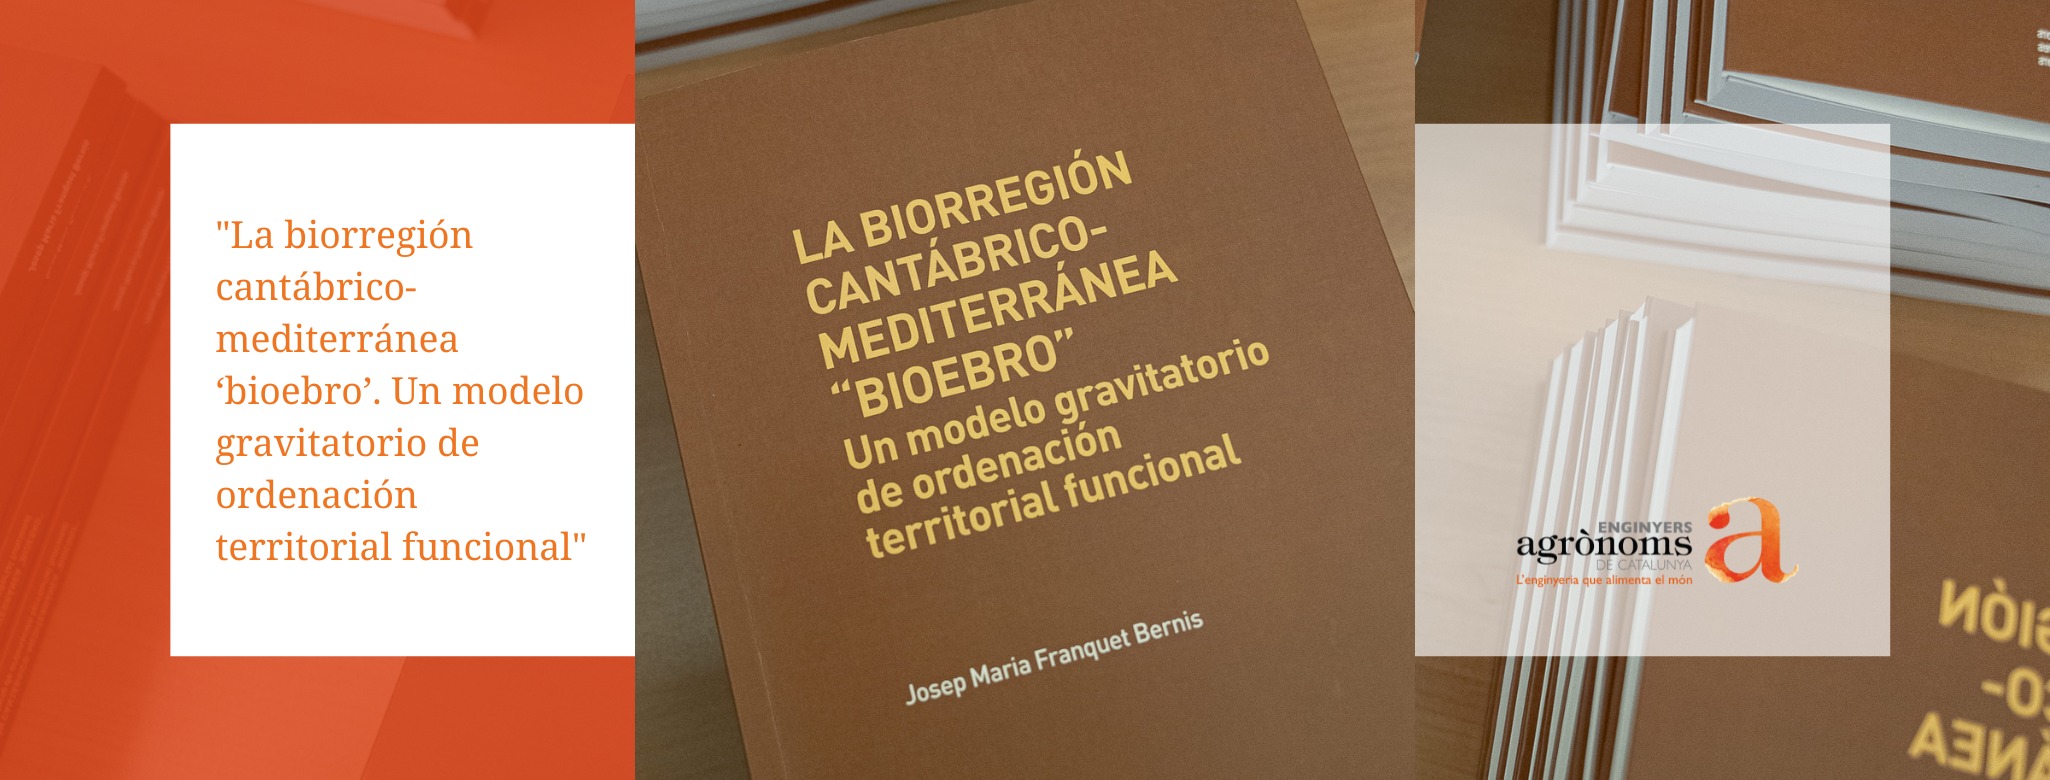 “La biorregión cantábrico-mediterránea ‘bioebro’. Un modelo gravitatorio de ordenación territorial funcional”, nou llibre del company Josep Maria Franquet